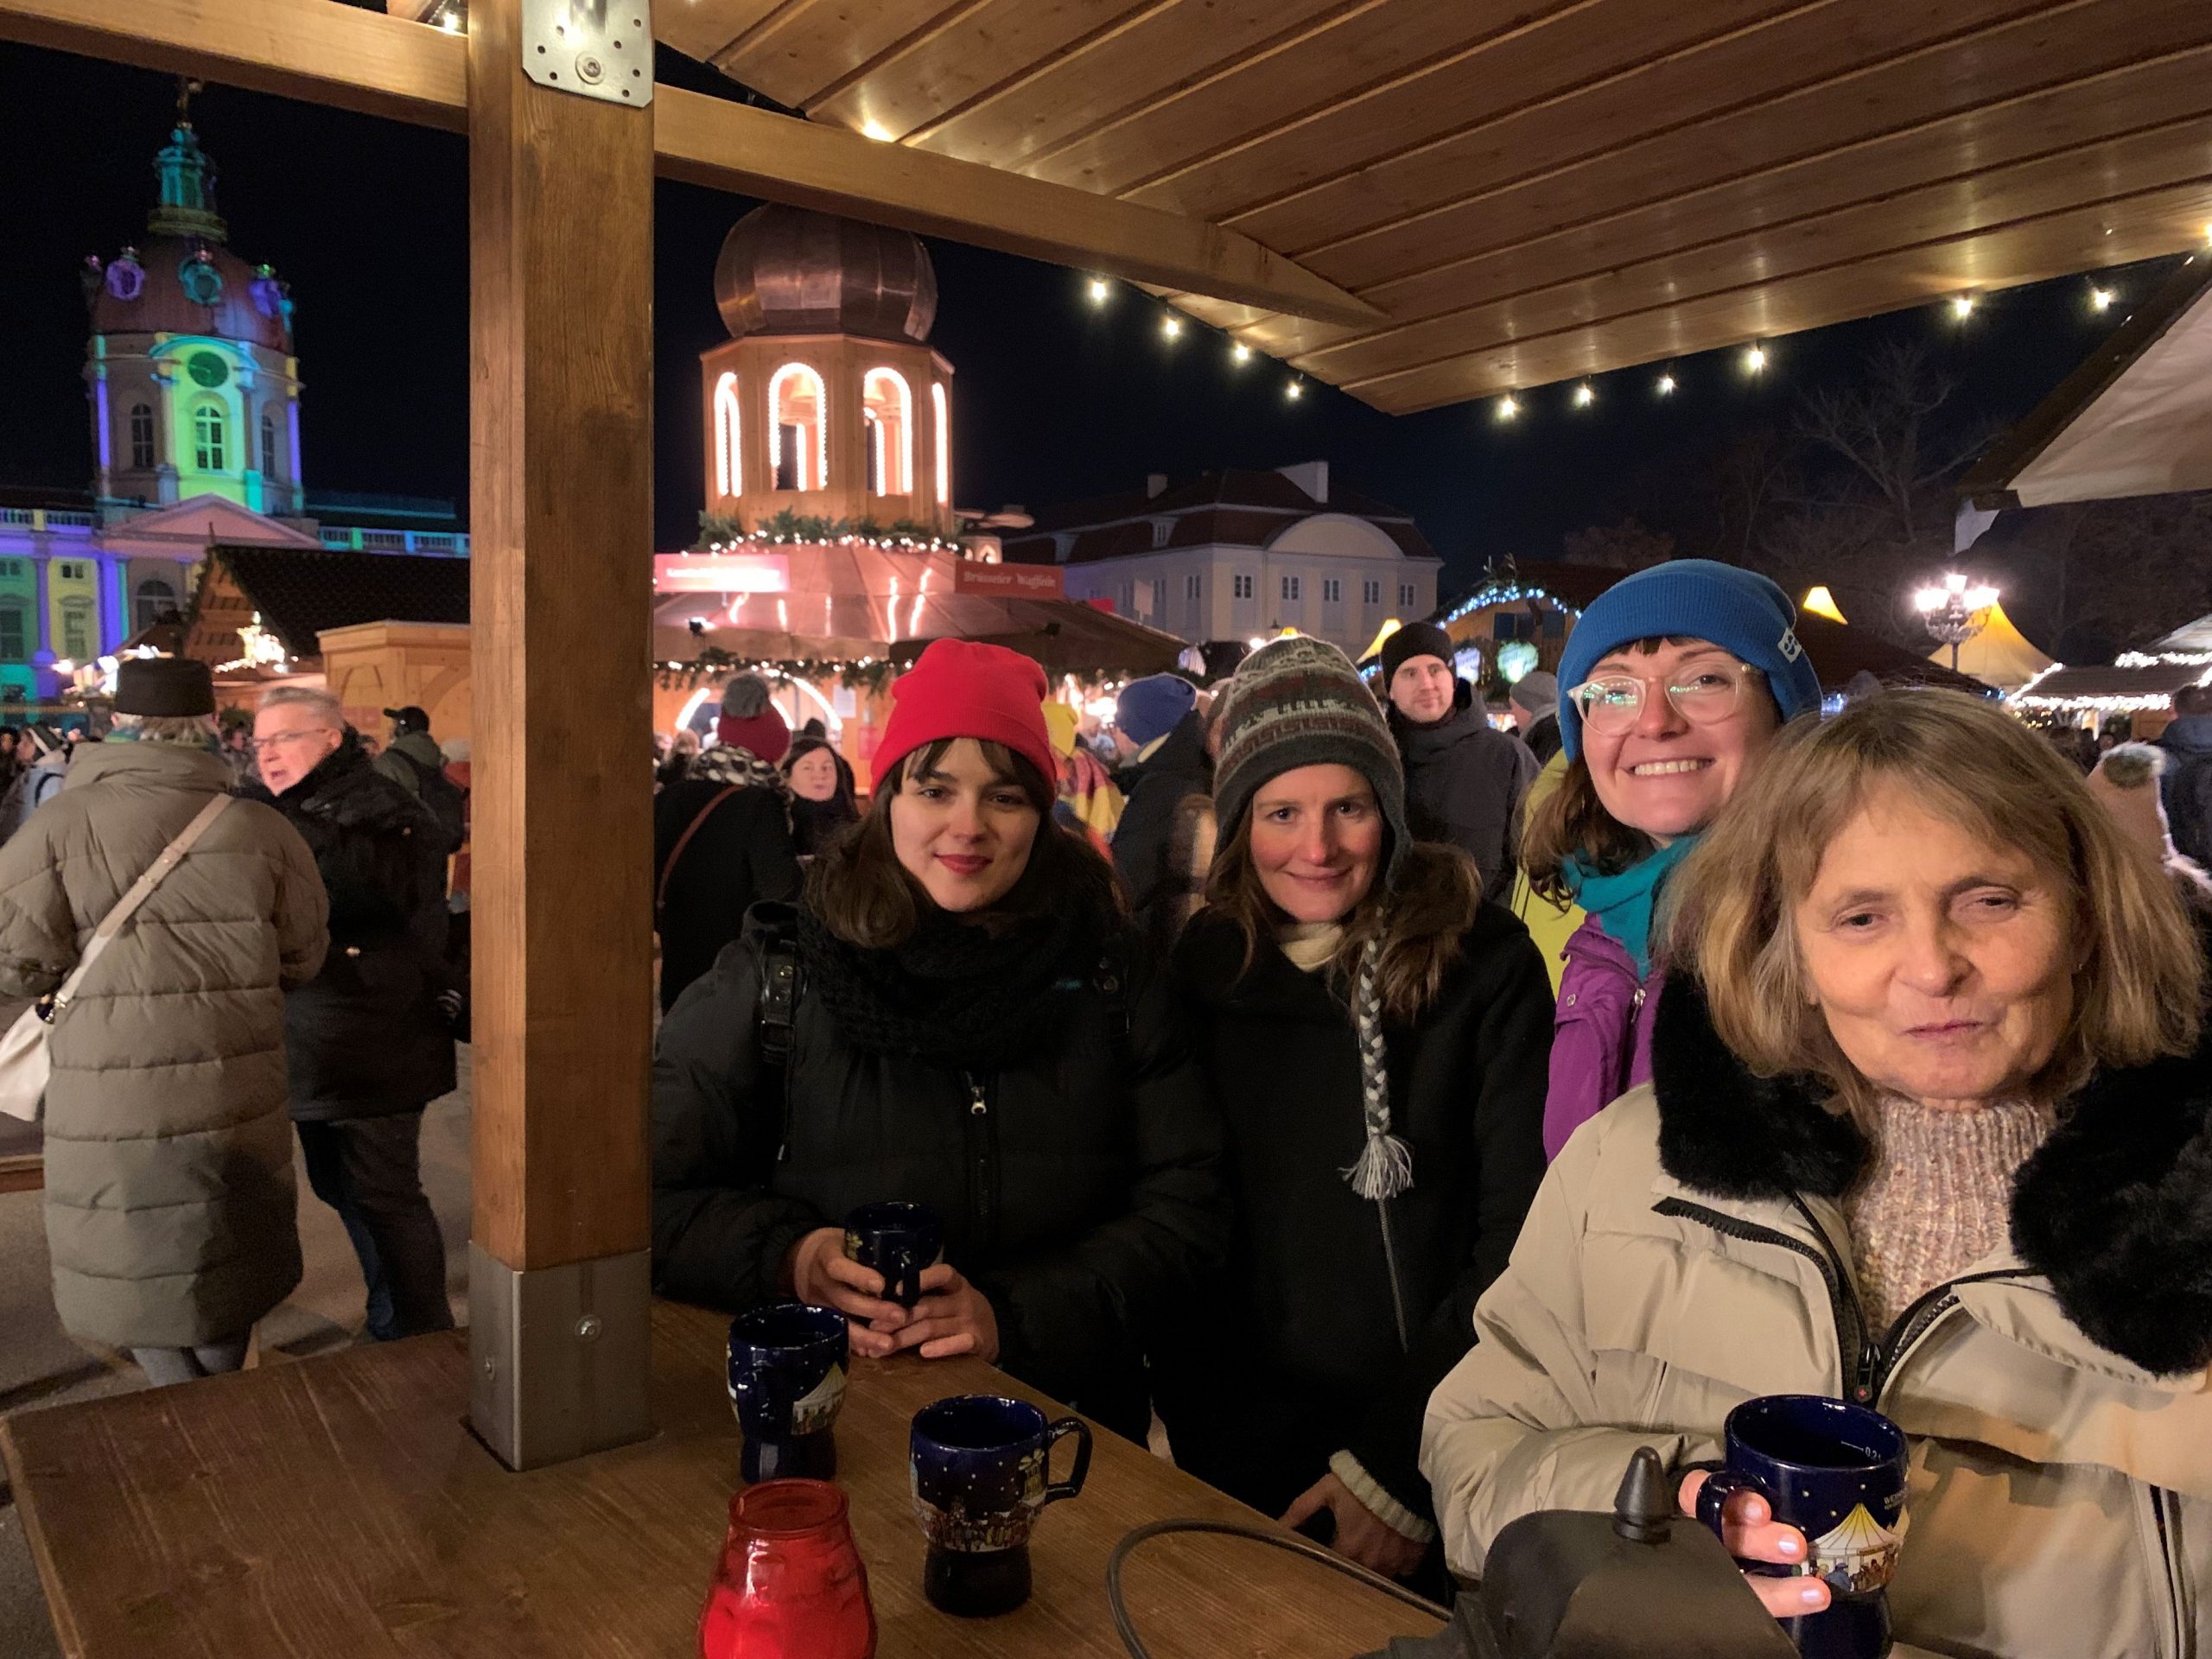 Auf dem Weihnachtsmarkt am Schloss Charlottenburg, im Hintergrund der beleuchtete Turm des Schlosses. In dicken Winterjacken stehen Danae, Lena, Anna und Barbara mit Glühweinbechern an einem Holztisch.